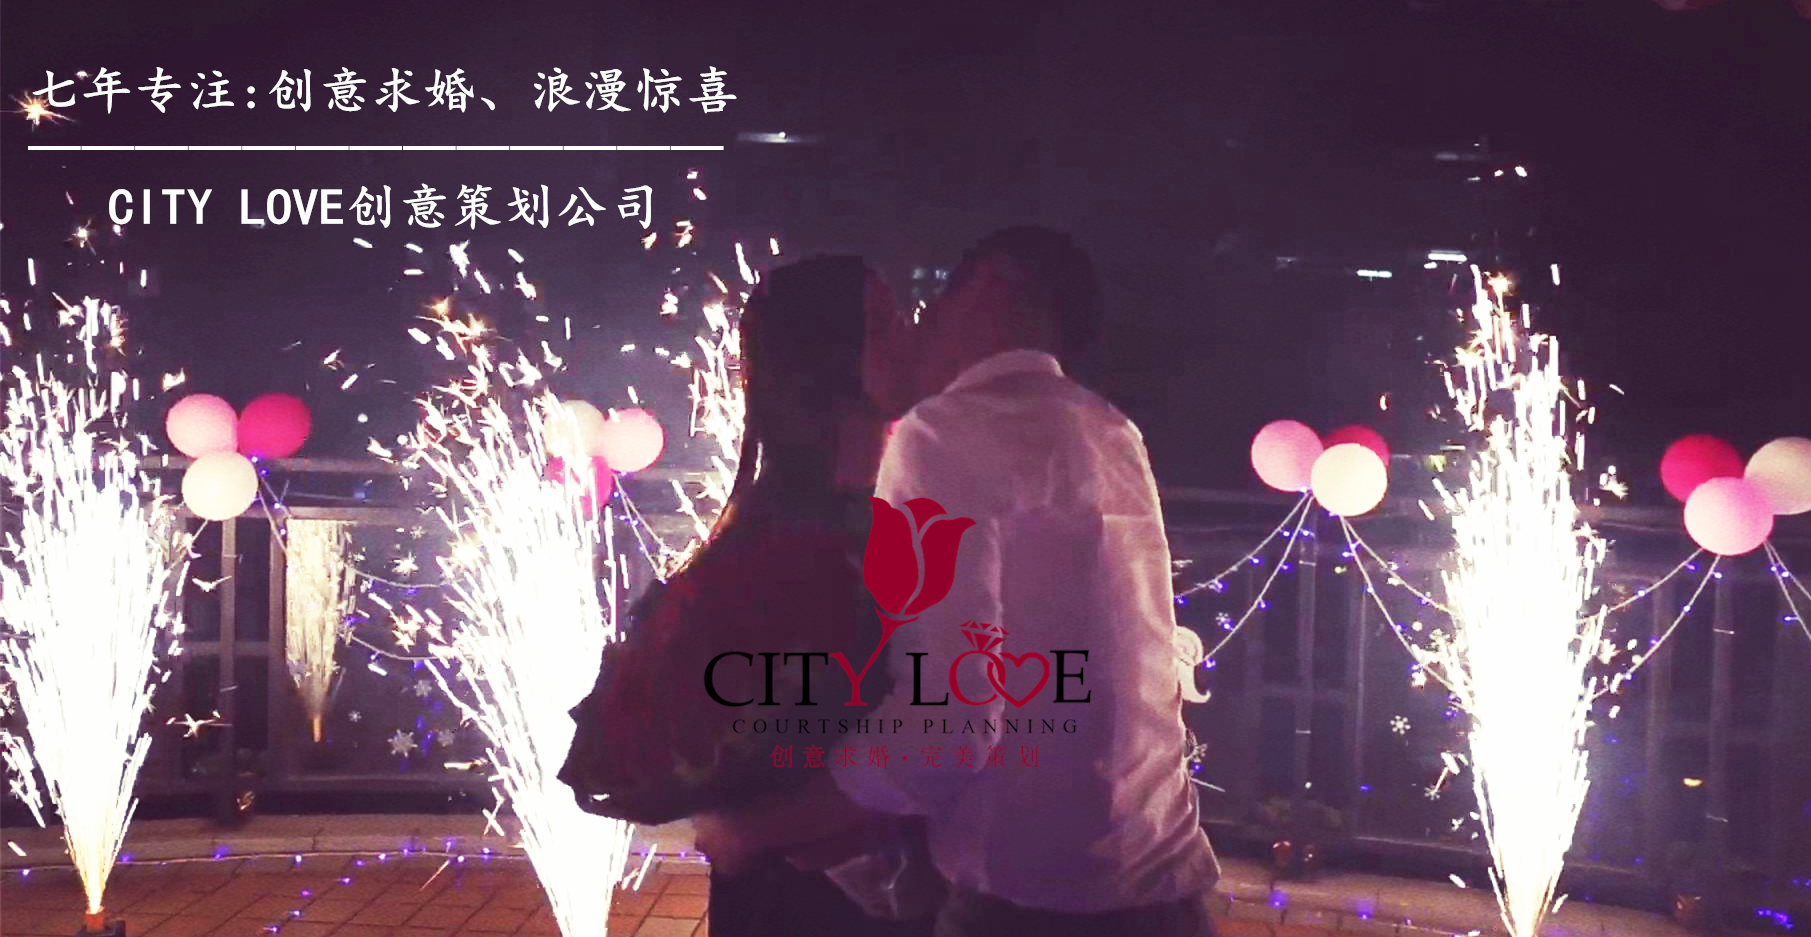 杭州烟花求婚 偶像剧般浪漫的求婚方式